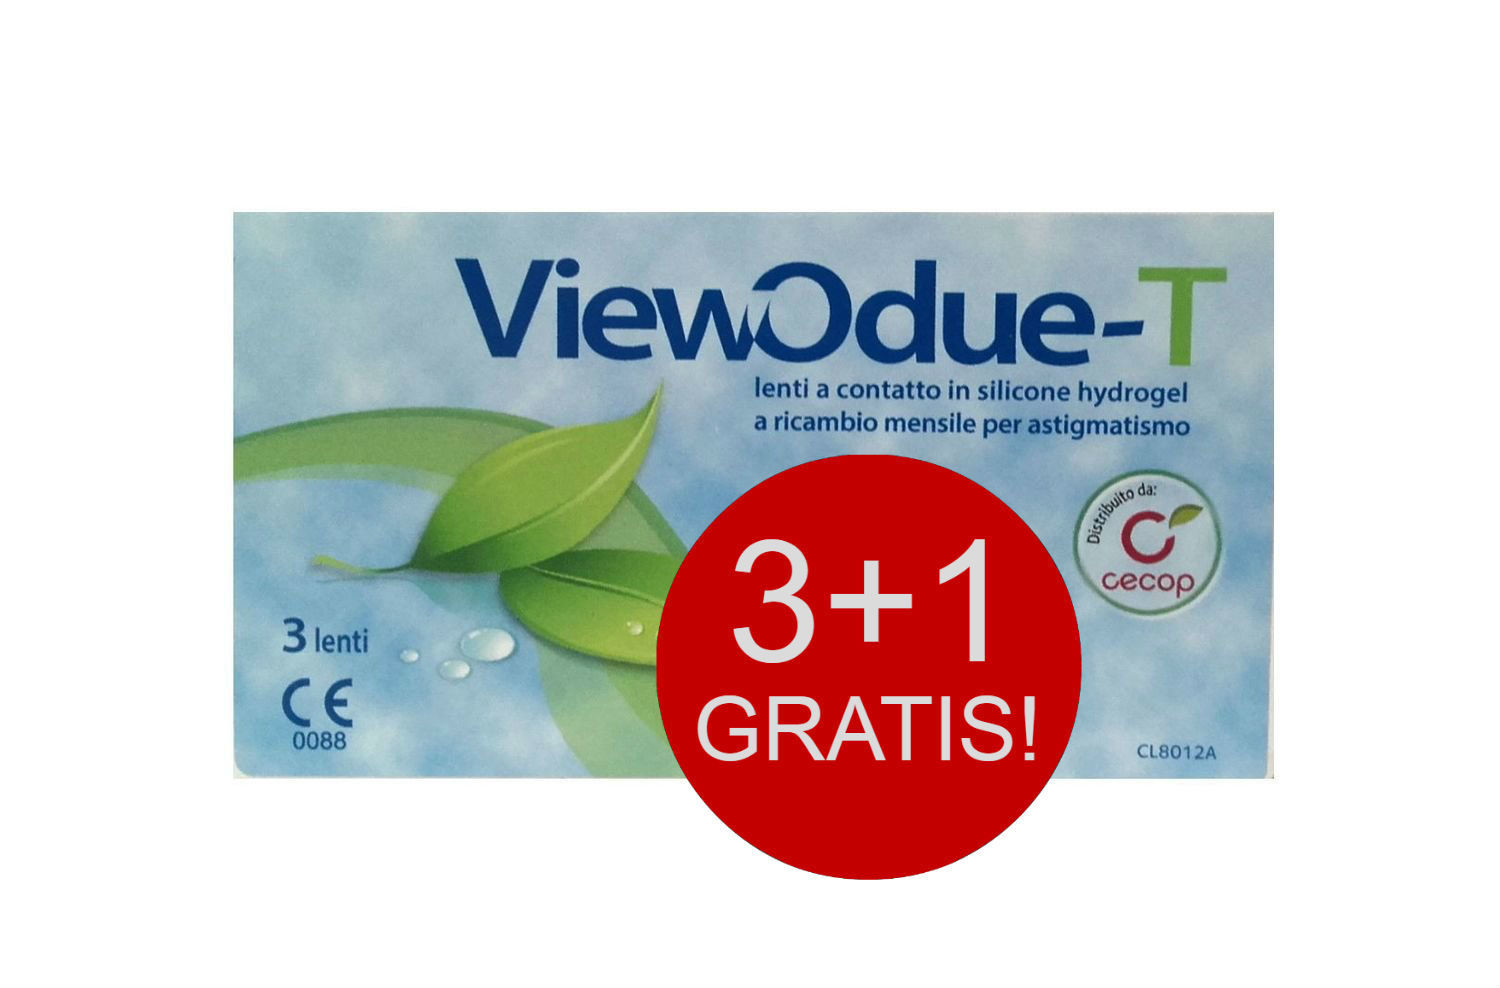 ViewOdue-T - Multipack 3+1 GRATIS